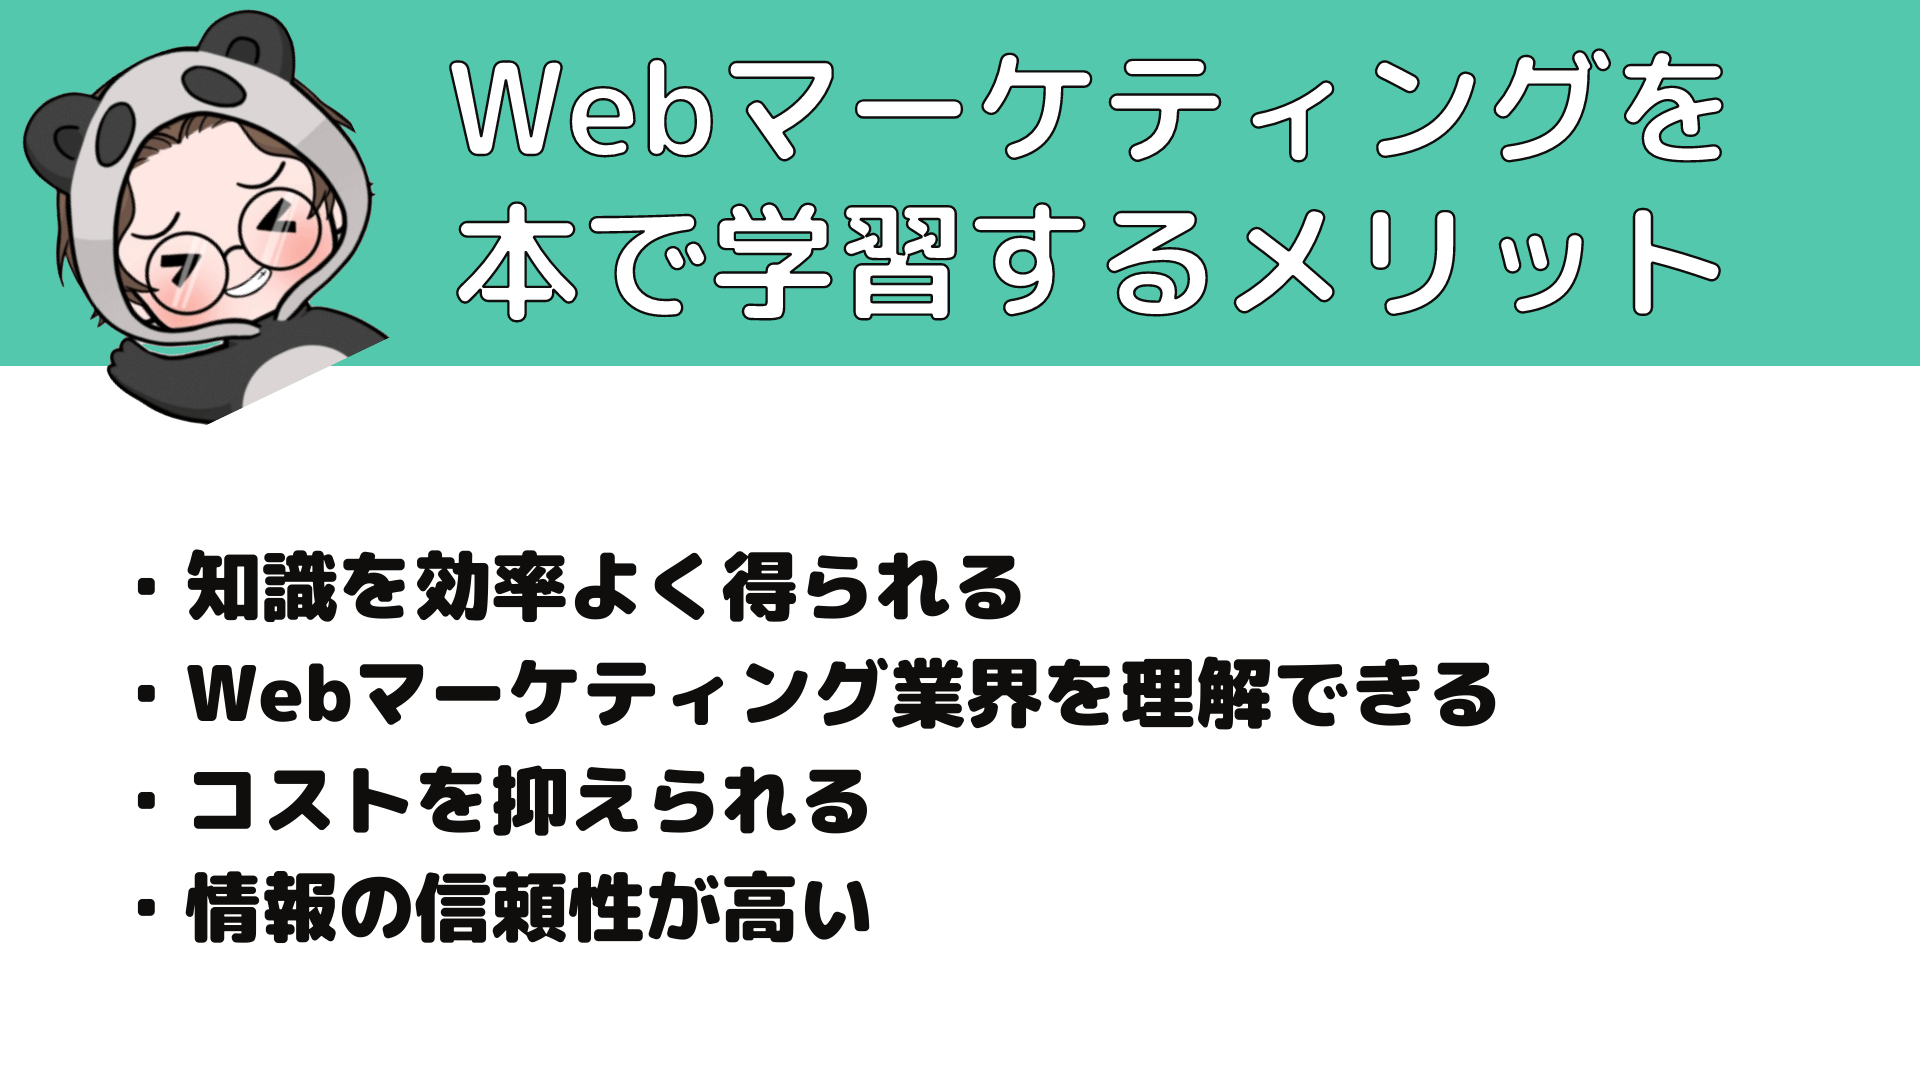 Webマーケティング_本_Webマーケティングを本で学習するメリット